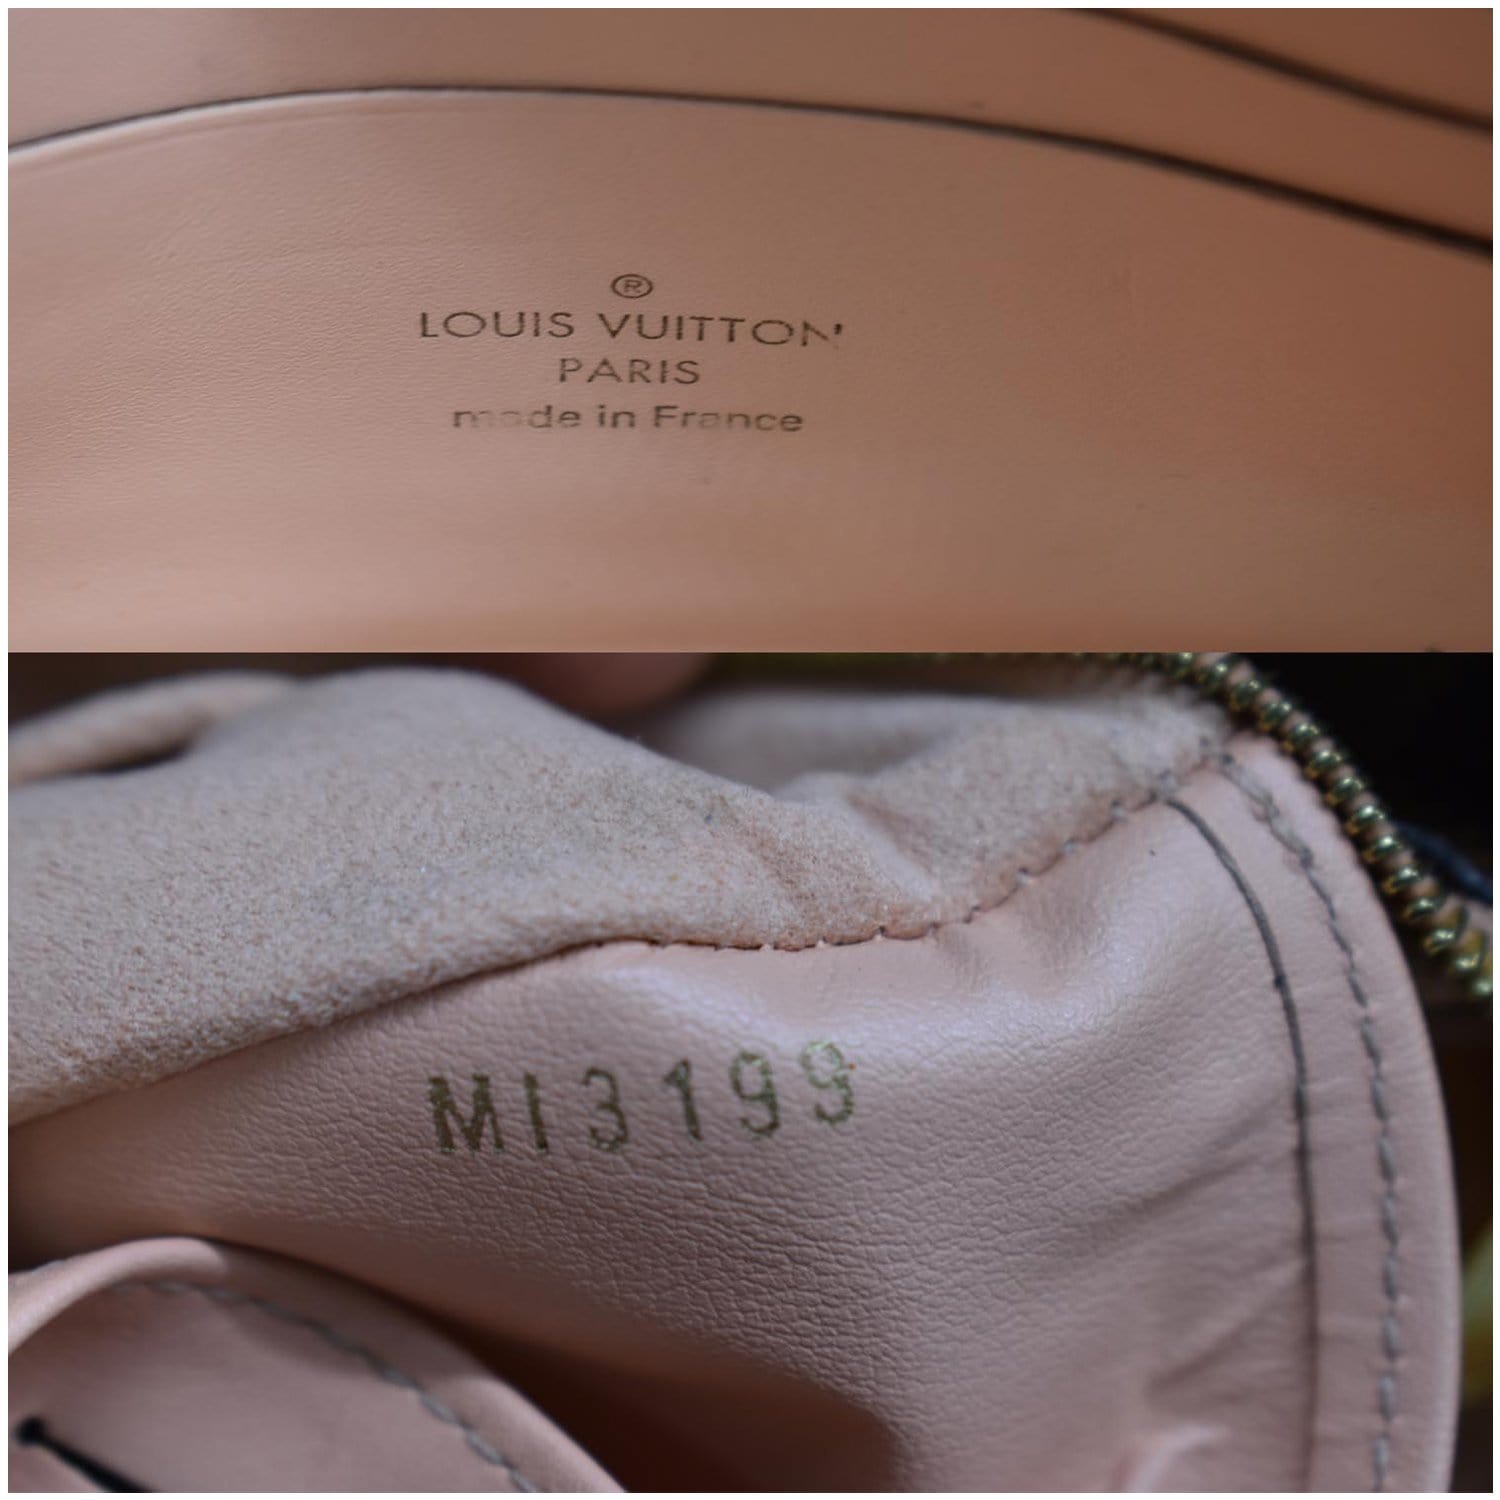 Louis Vuitton Damier Ebene Canvas Double Zip Pochette Bag - Boca